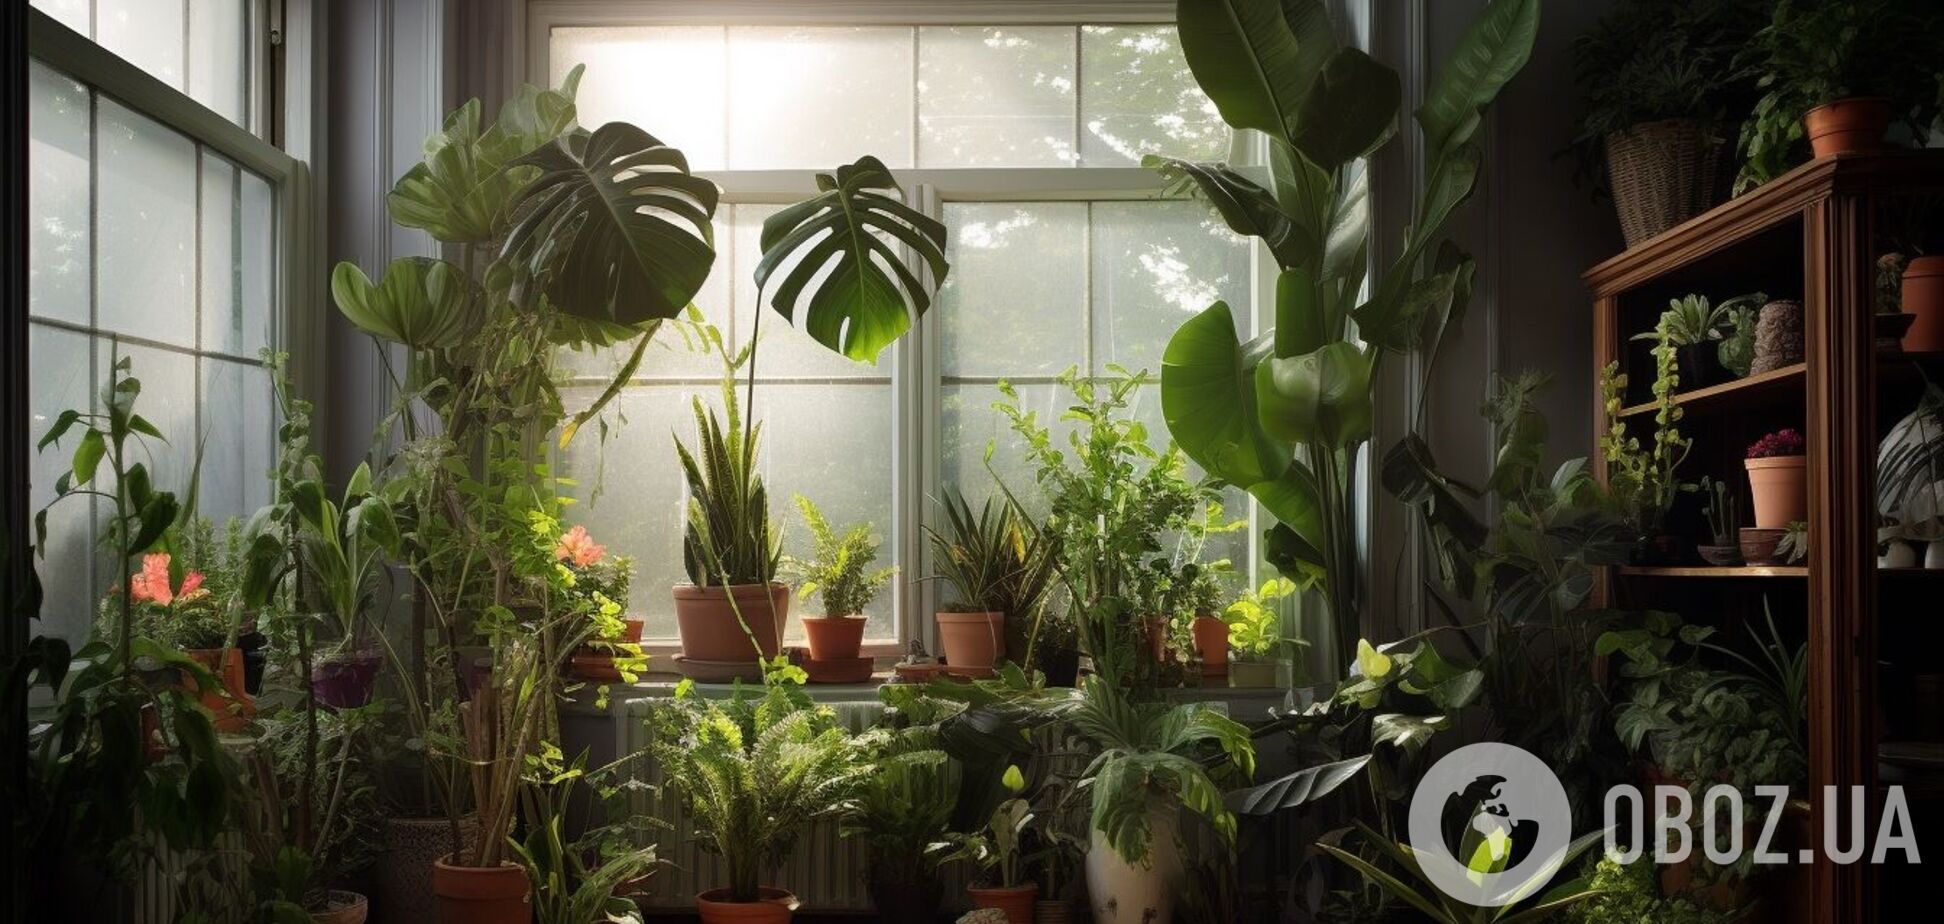 Какие комнатные растения помогут избавиться от лишней влаги дома: три 'помощника', которые помешают появлению плесени